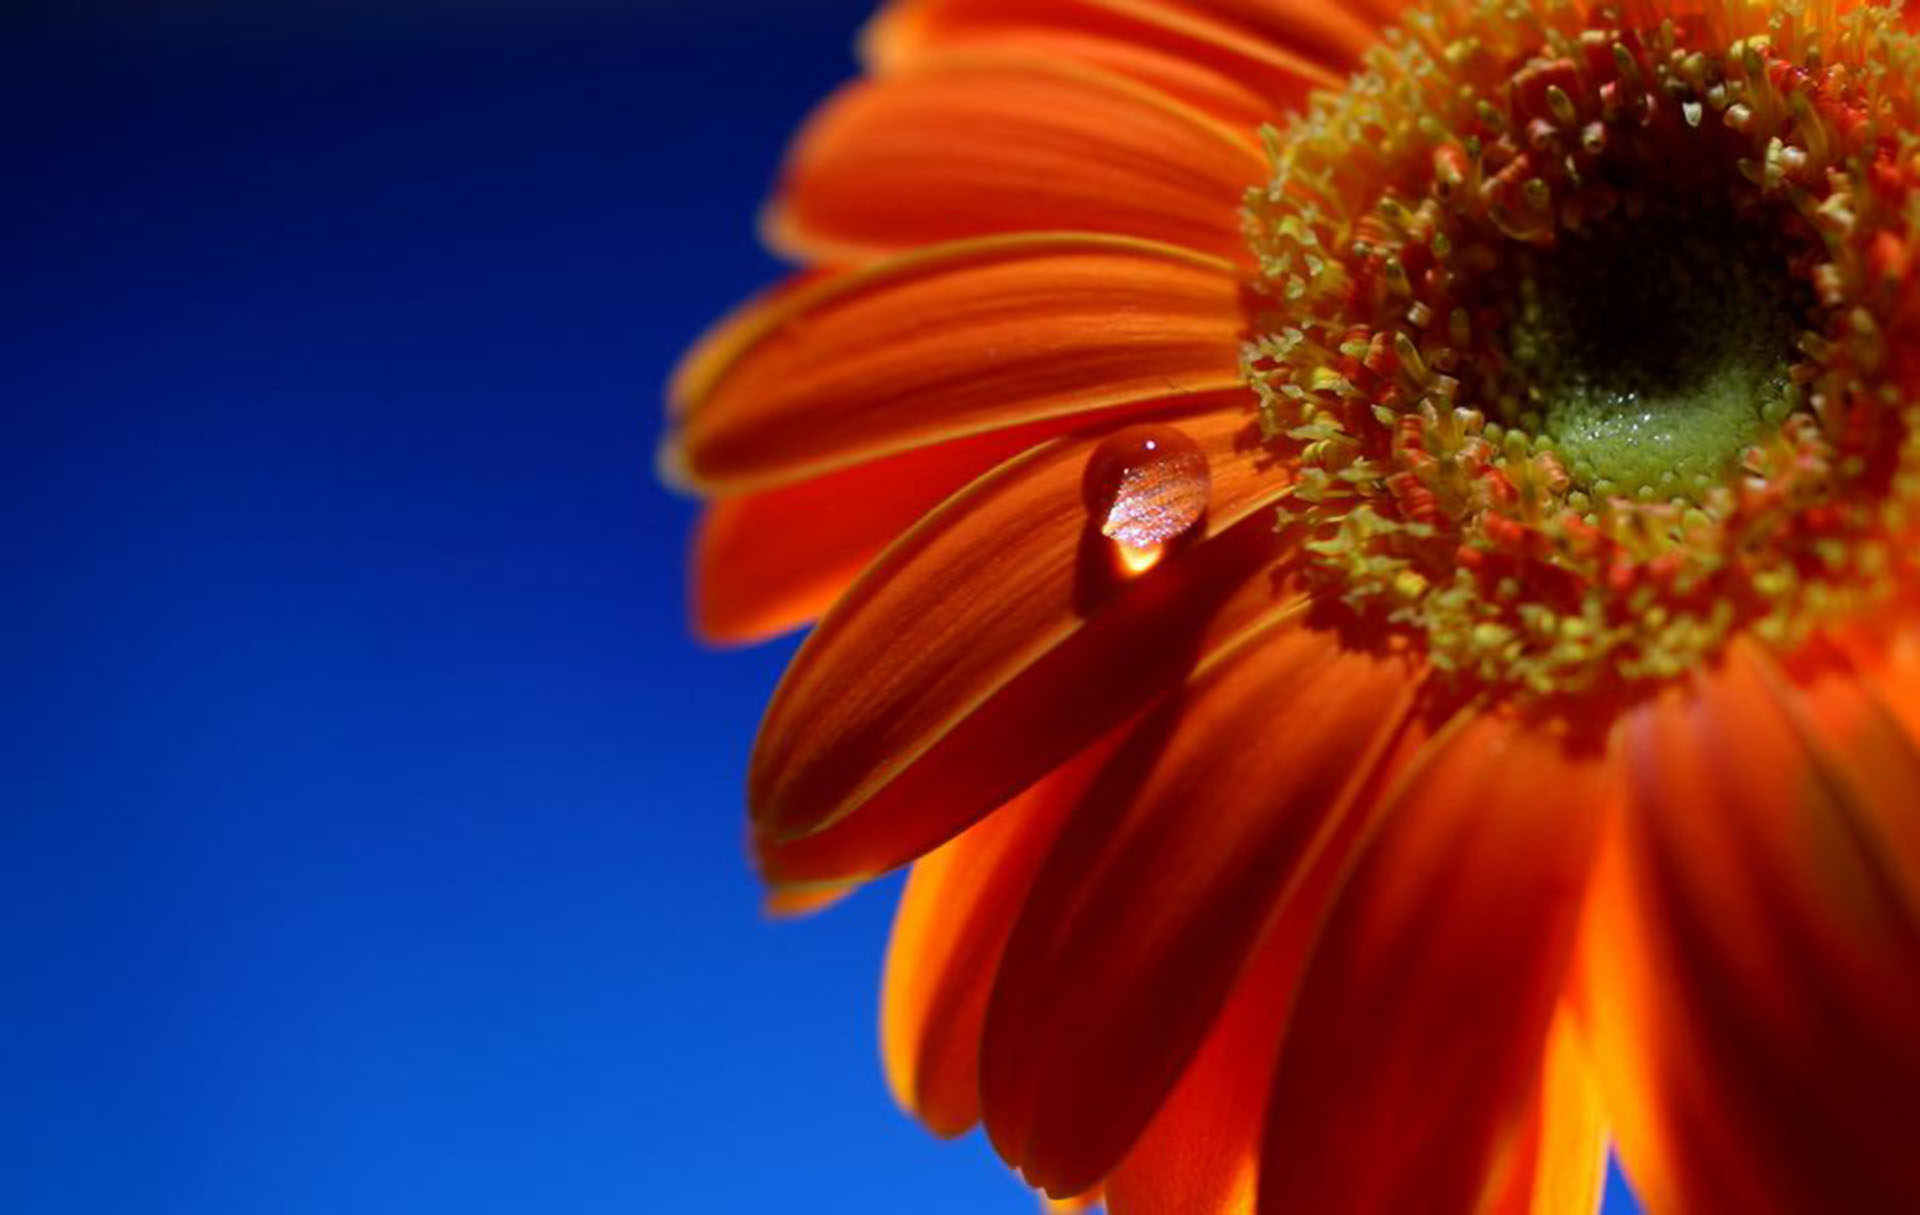 Гербера природа цветок оранжевый крупный план бесплатно